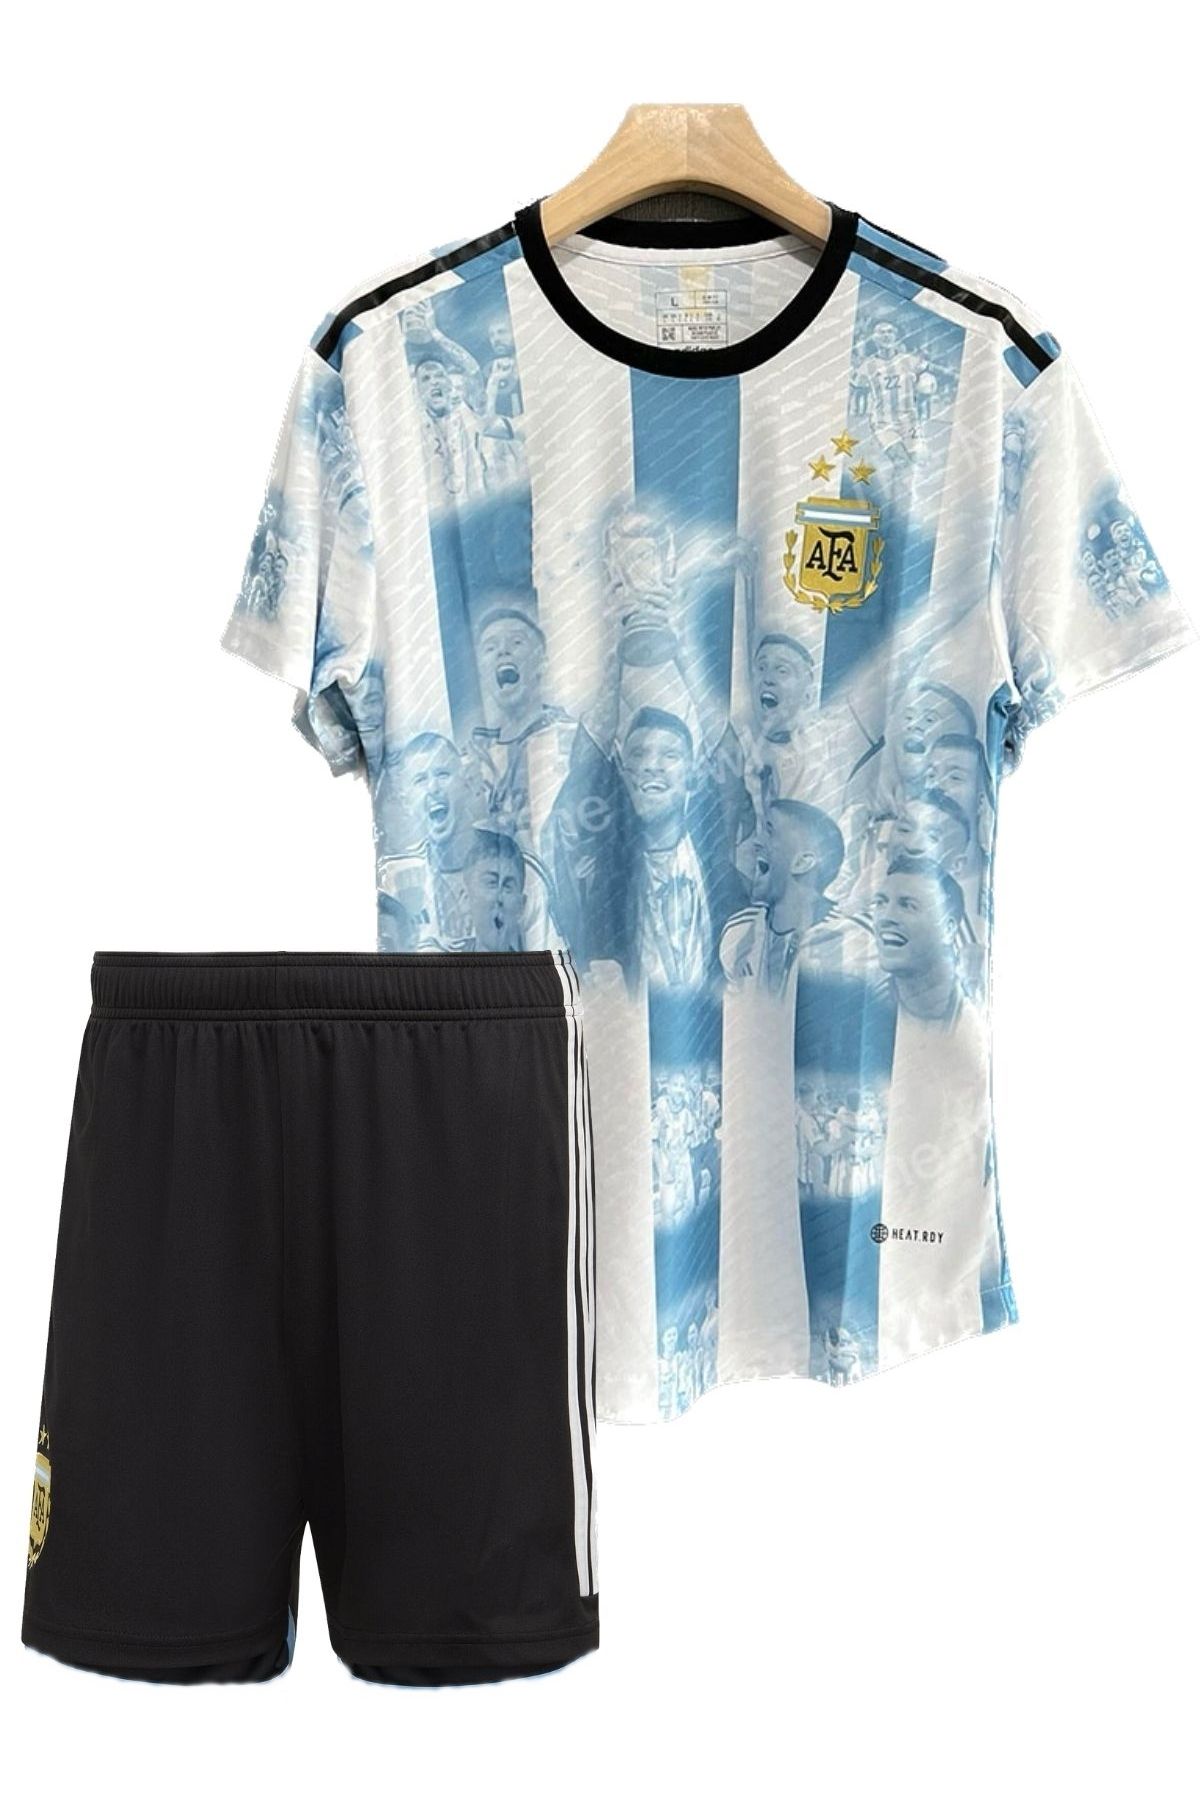 ACTW Arjantin Milli Takım Özel Seri Dünya Kupası Çocuk Forma Ve Şort Takımı